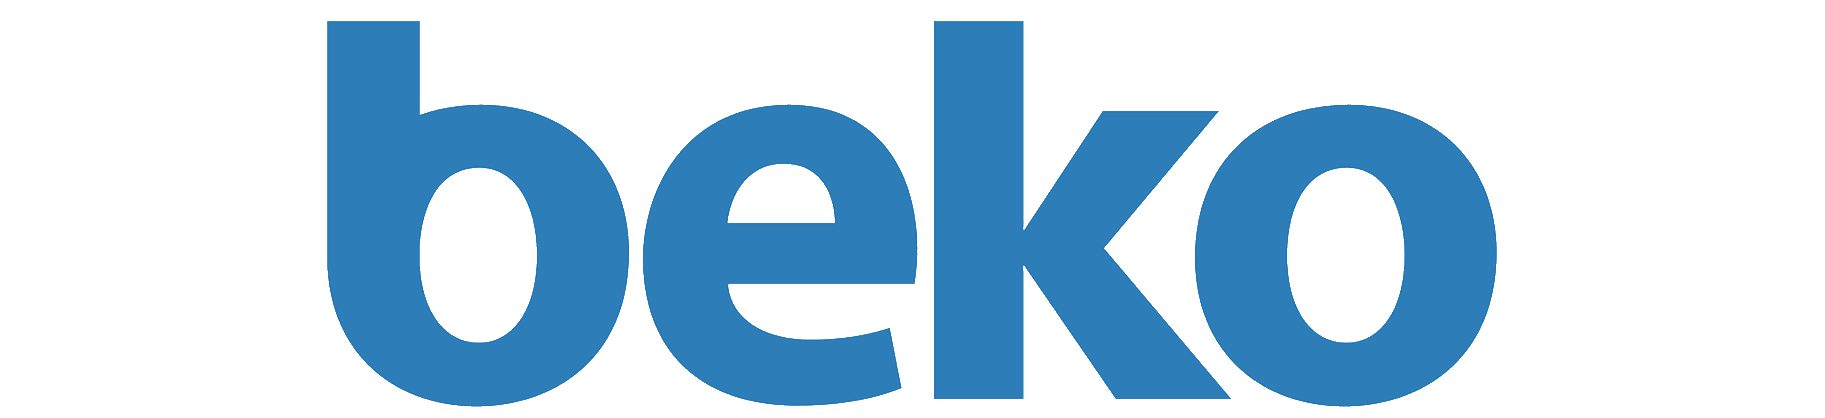 Beko форум. Beko. Beko бренд. Beko эмблема. Beko старый логотип.